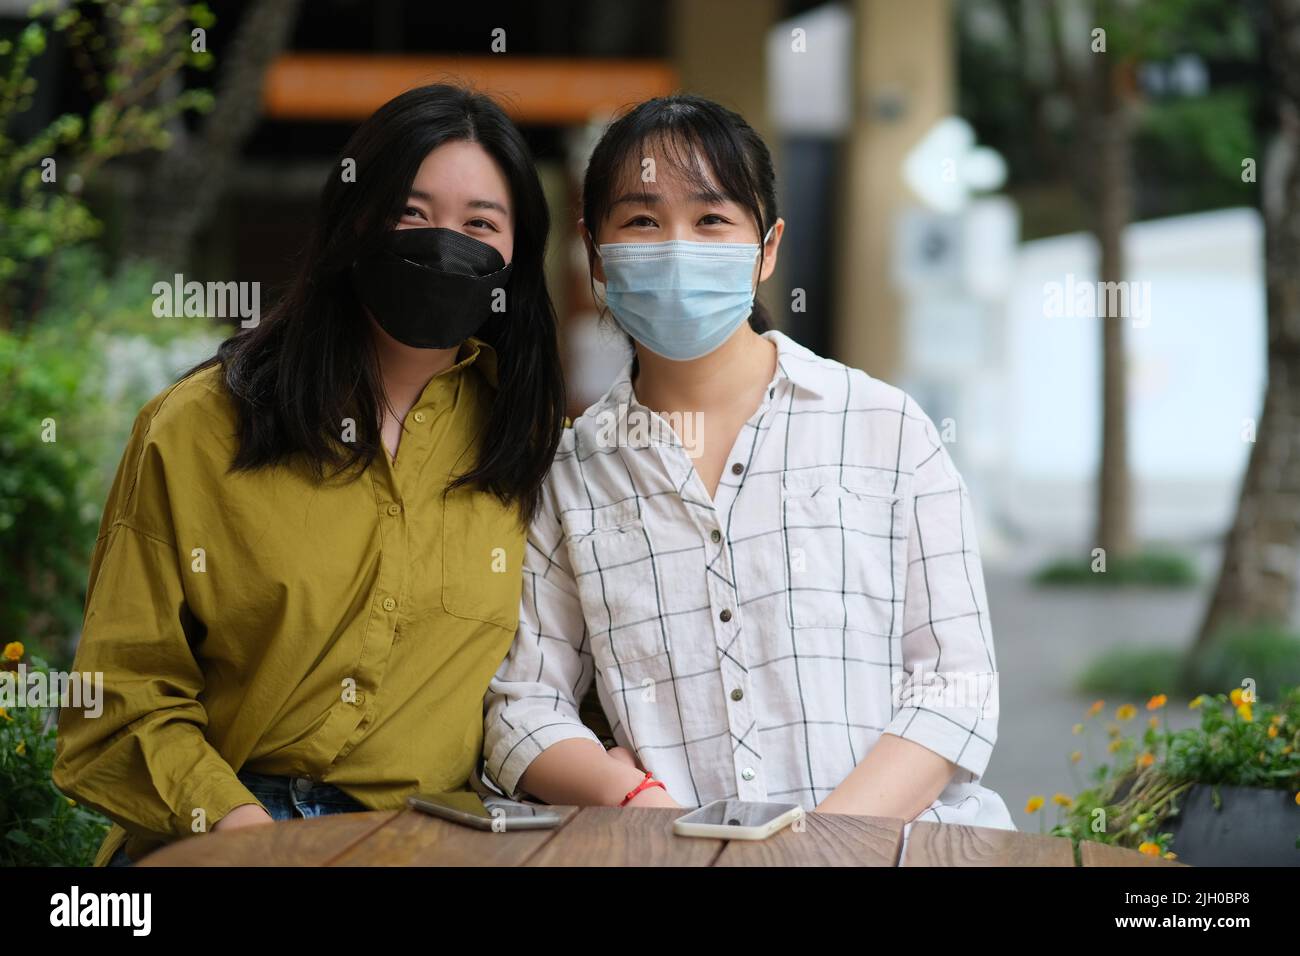 Deux jeunes femmes asiatiques dans un masque facial assis au café-terrasse, regardant la caméra Banque D'Images